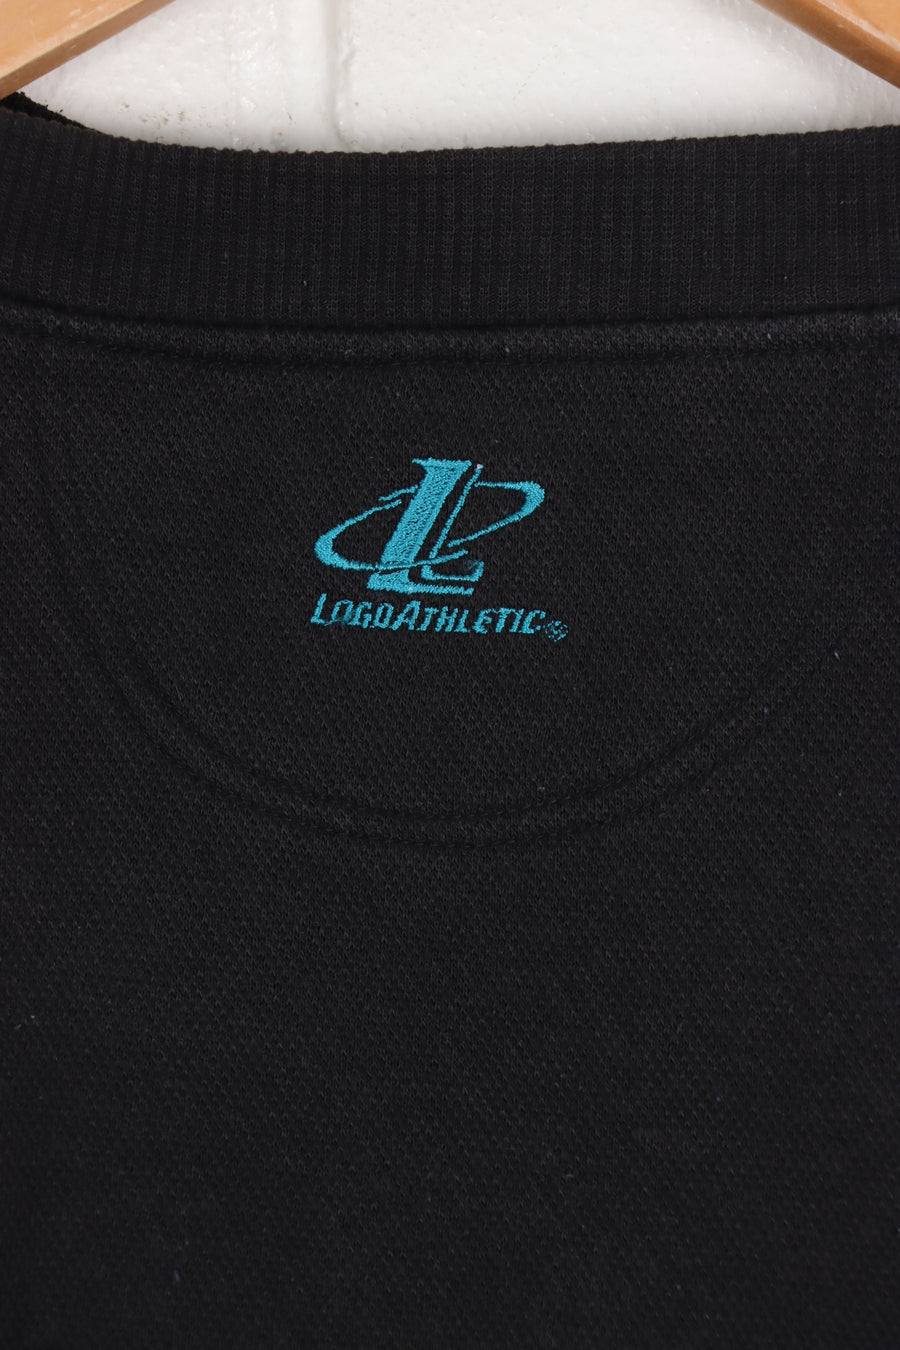 NFL Jaguars Embroidered Teal & Black Textured Sweatshirt (XXL)